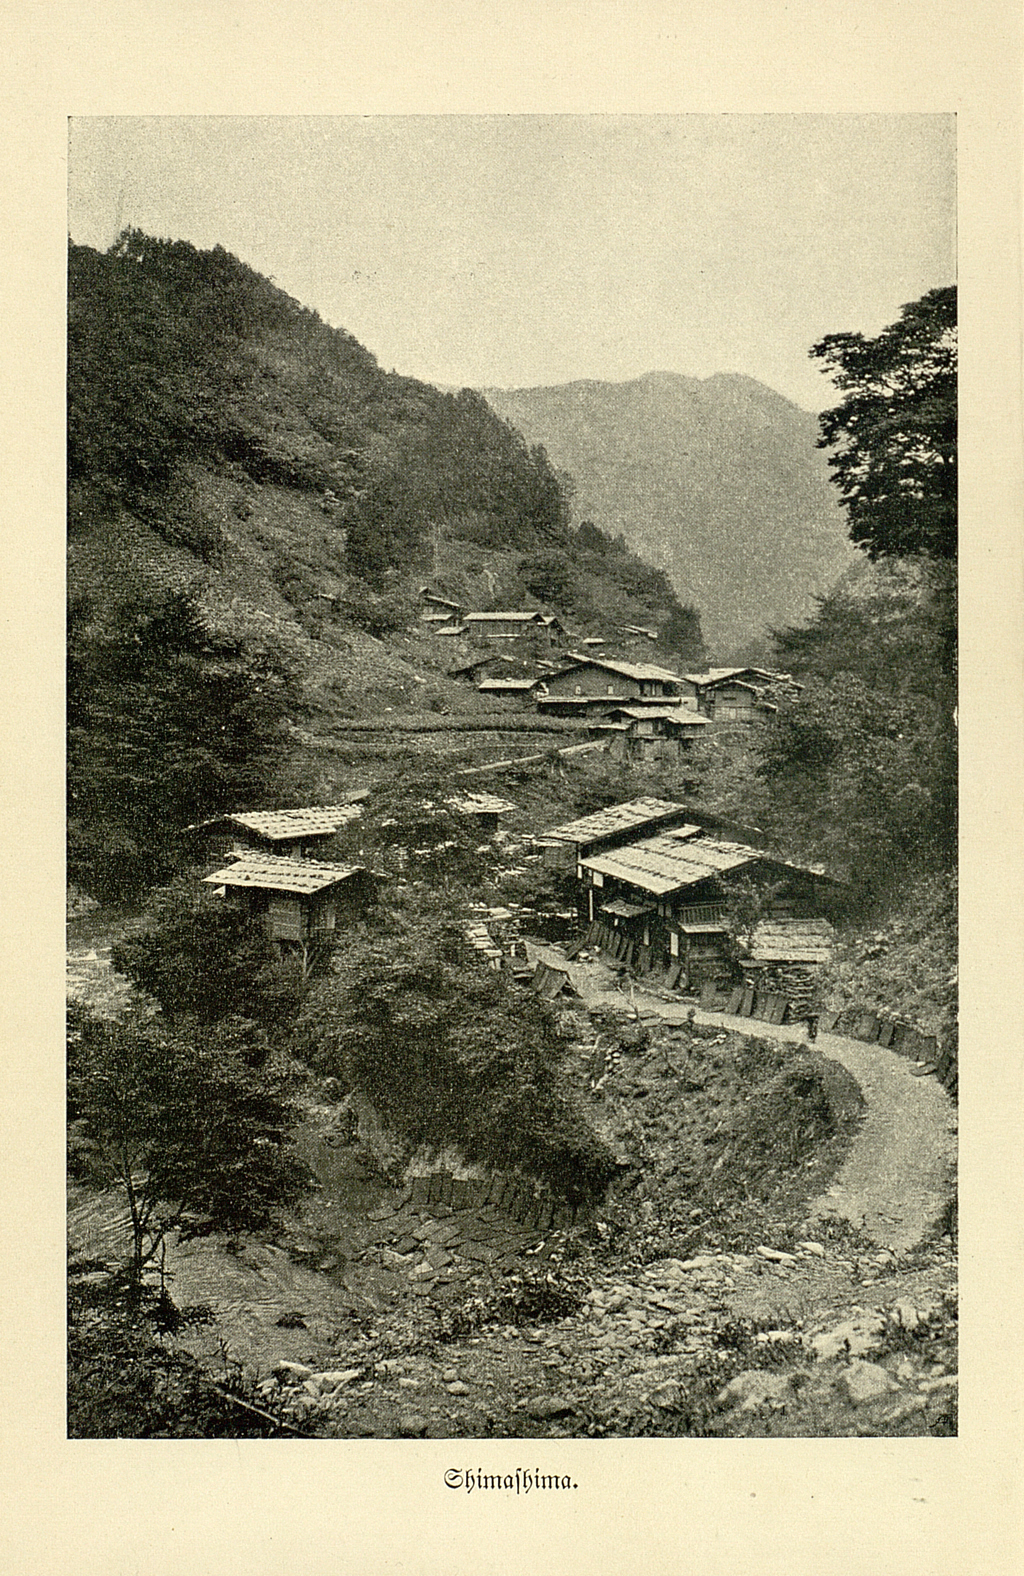 Die Schwarz-Weiß Fotografie zeigt eine kleine japanische Bergsiedlung. 